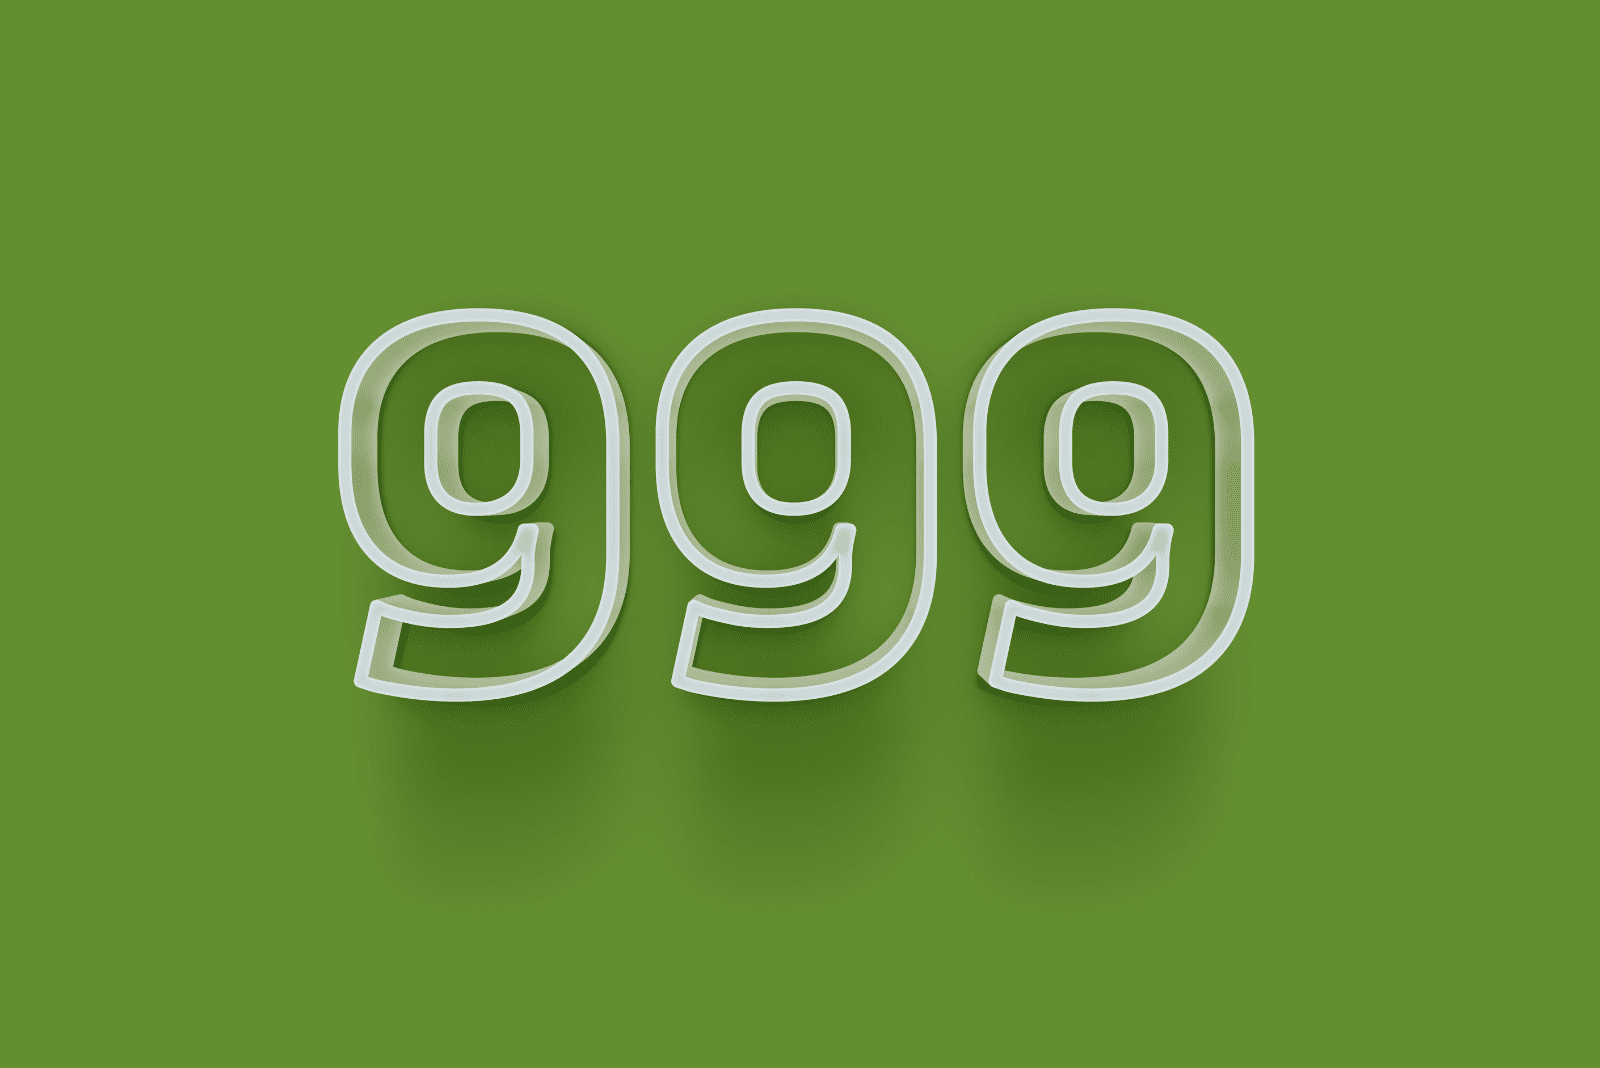 Nummer 999 auf grünem Hintergrund